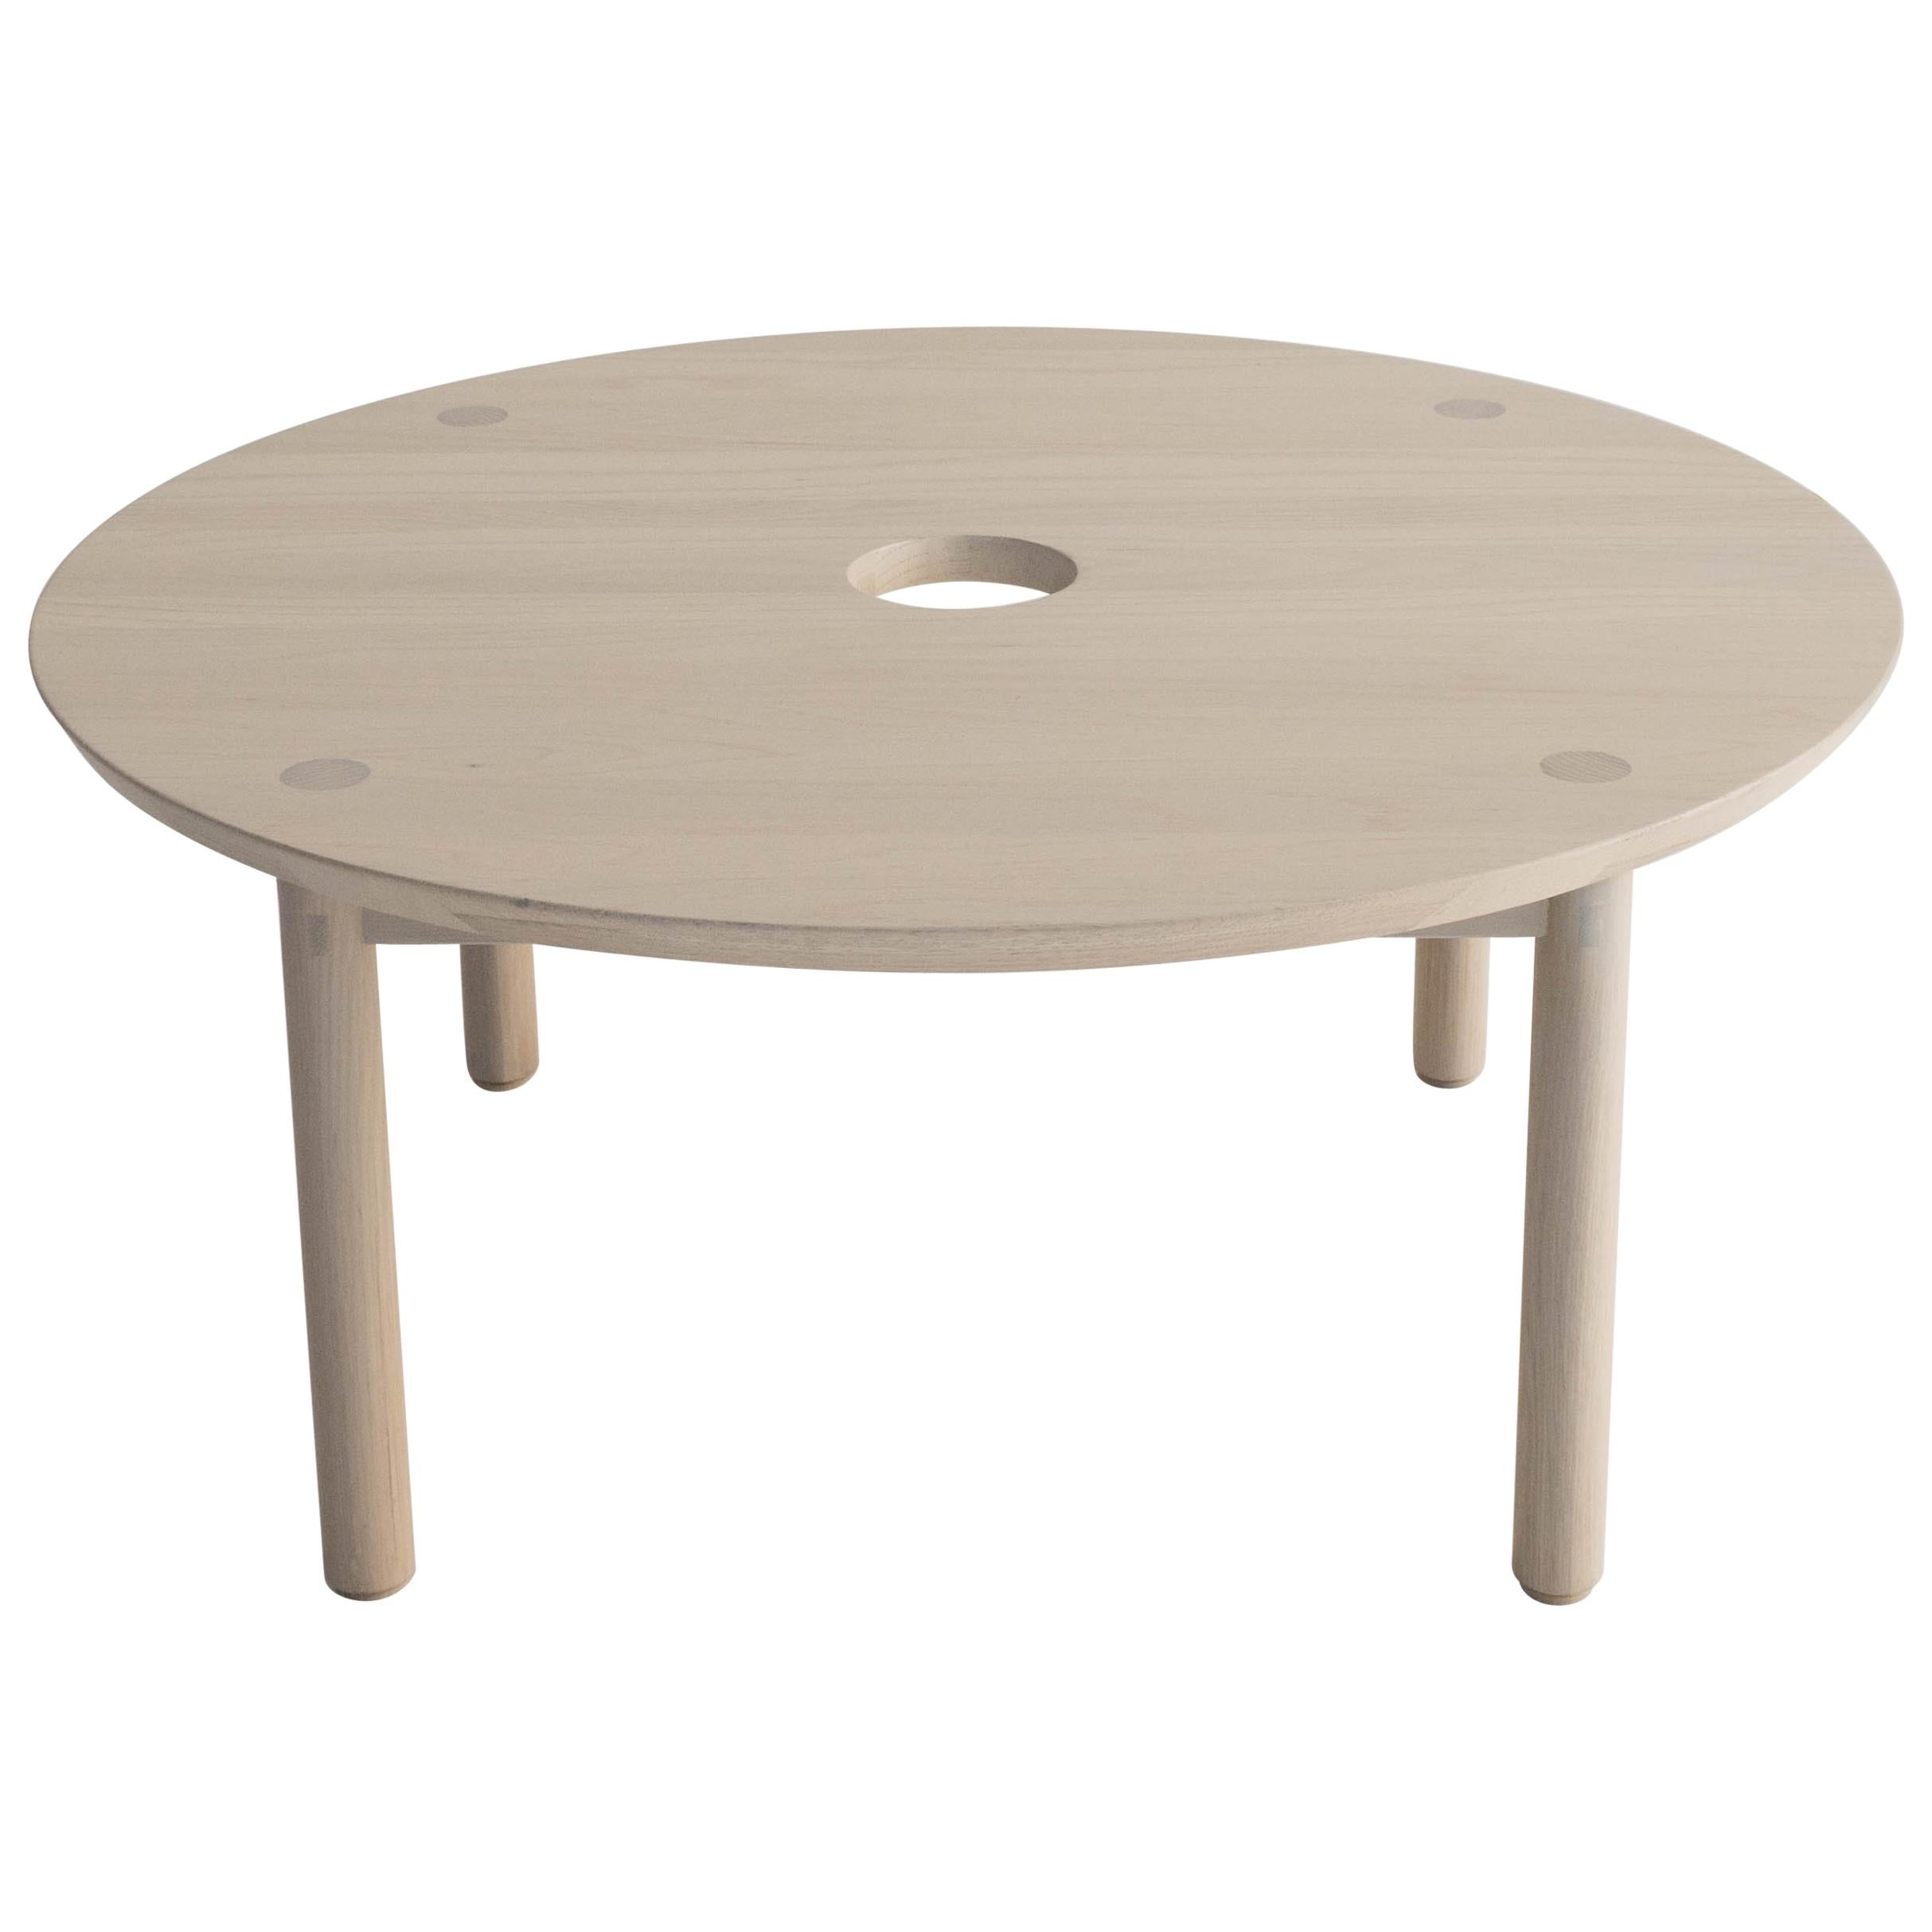 Table basse Aurea par Sun at Six, nue, table minimaliste/mi-siècle moderne en bois